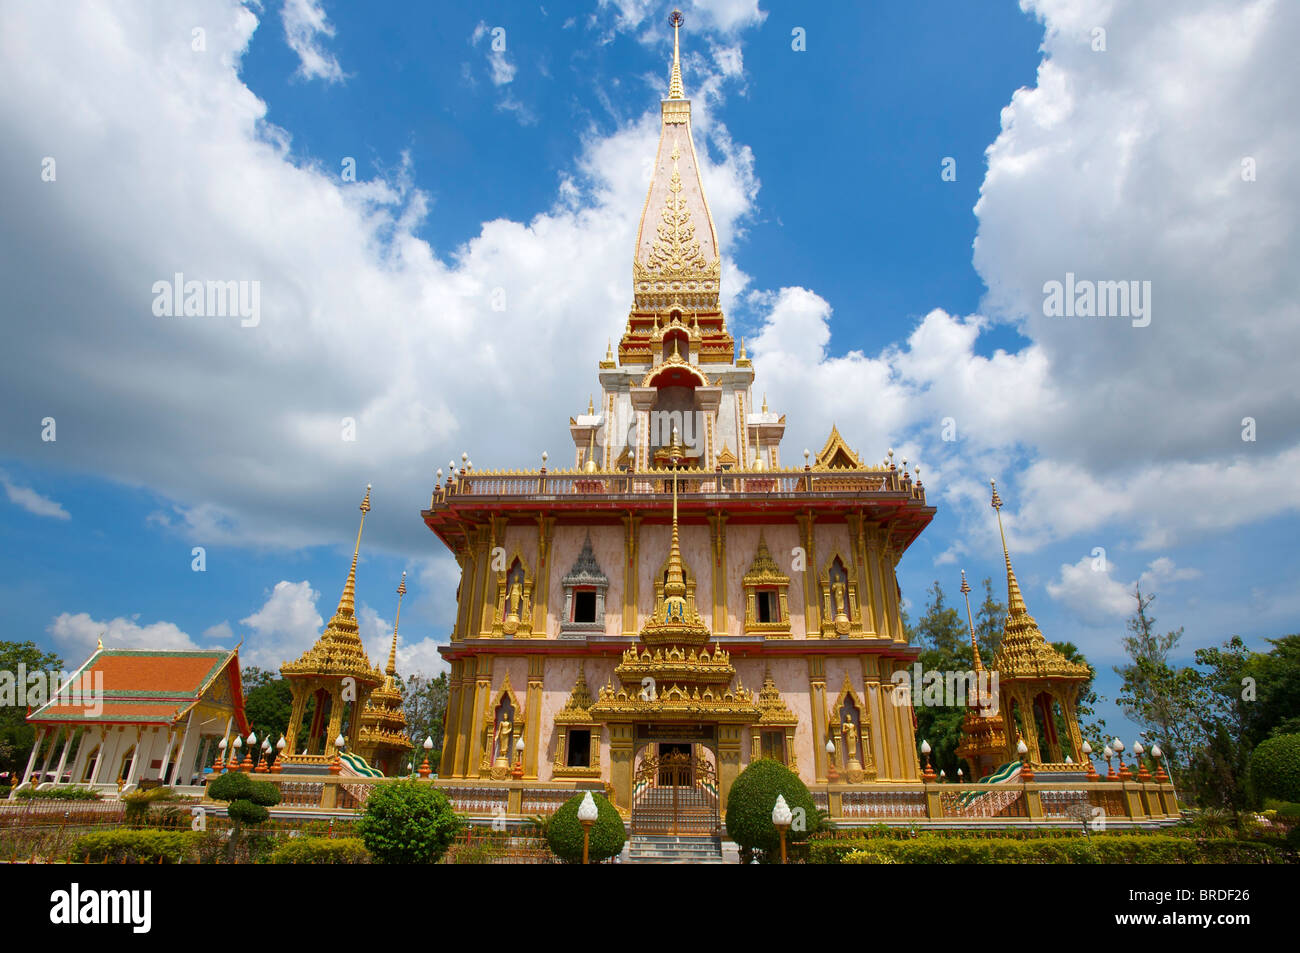 Wat Chalong Tempel, Phuket, Thailand Stock Photo